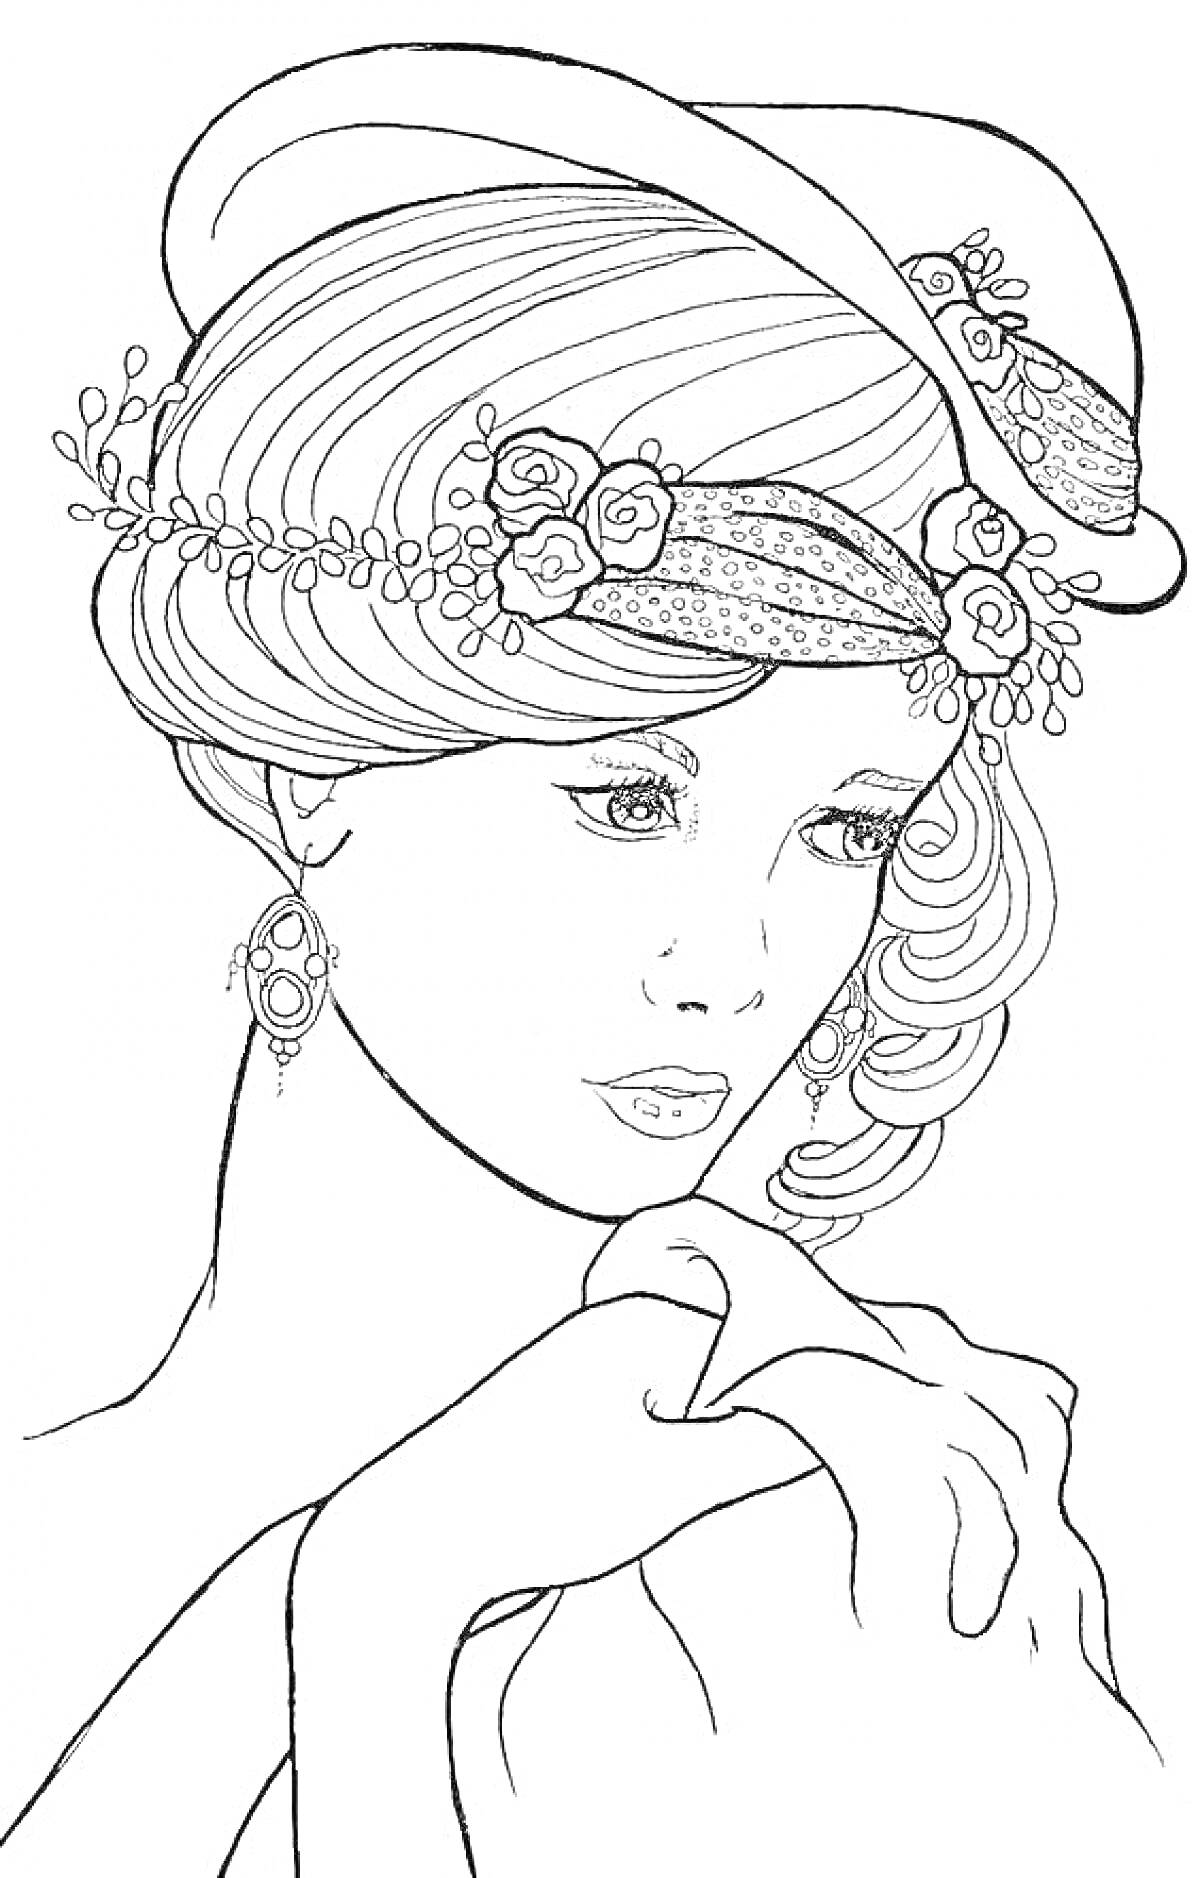 Женщина в шляпе с цветами и серьгами, держит ткань